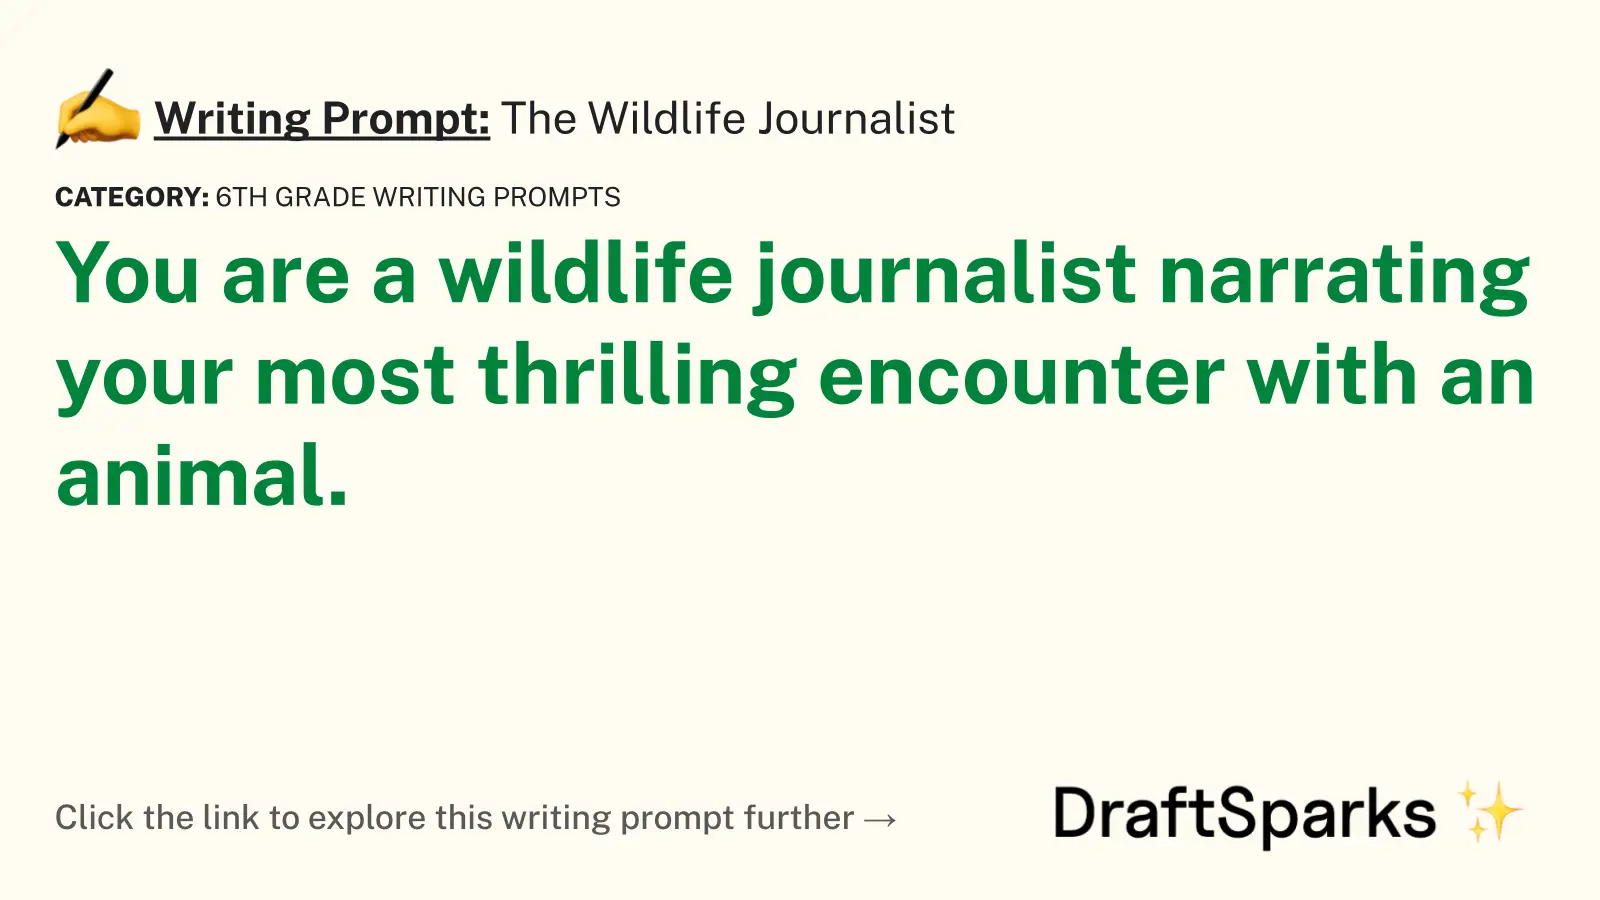 The Wildlife Journalist